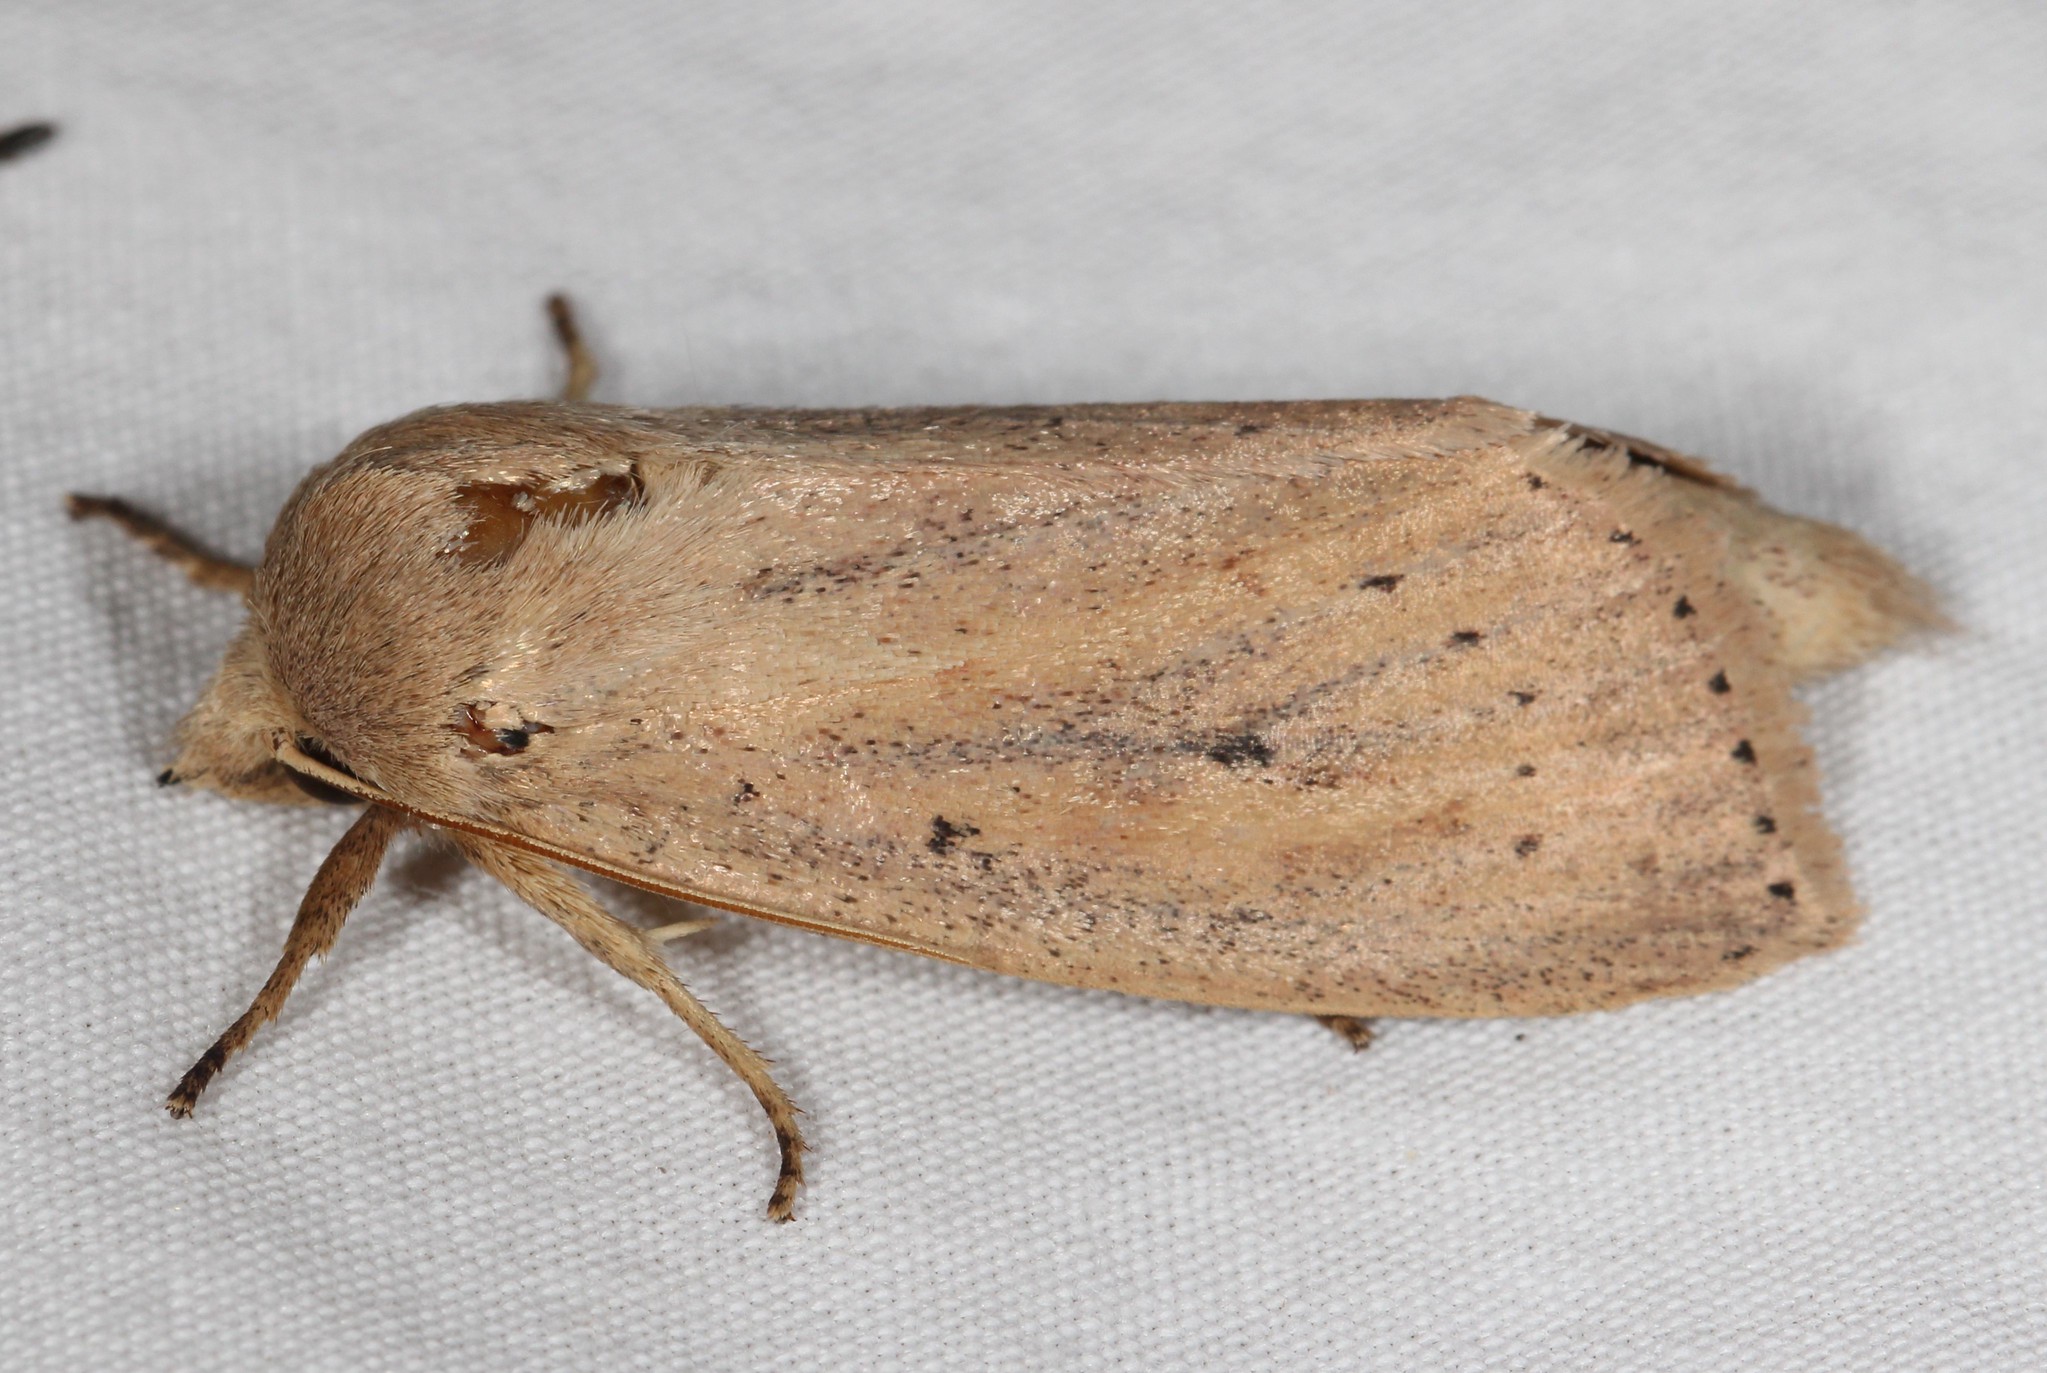 Maryland Biodiversity Project - Oblong Sedge Borer Moth (Globia oblonga)